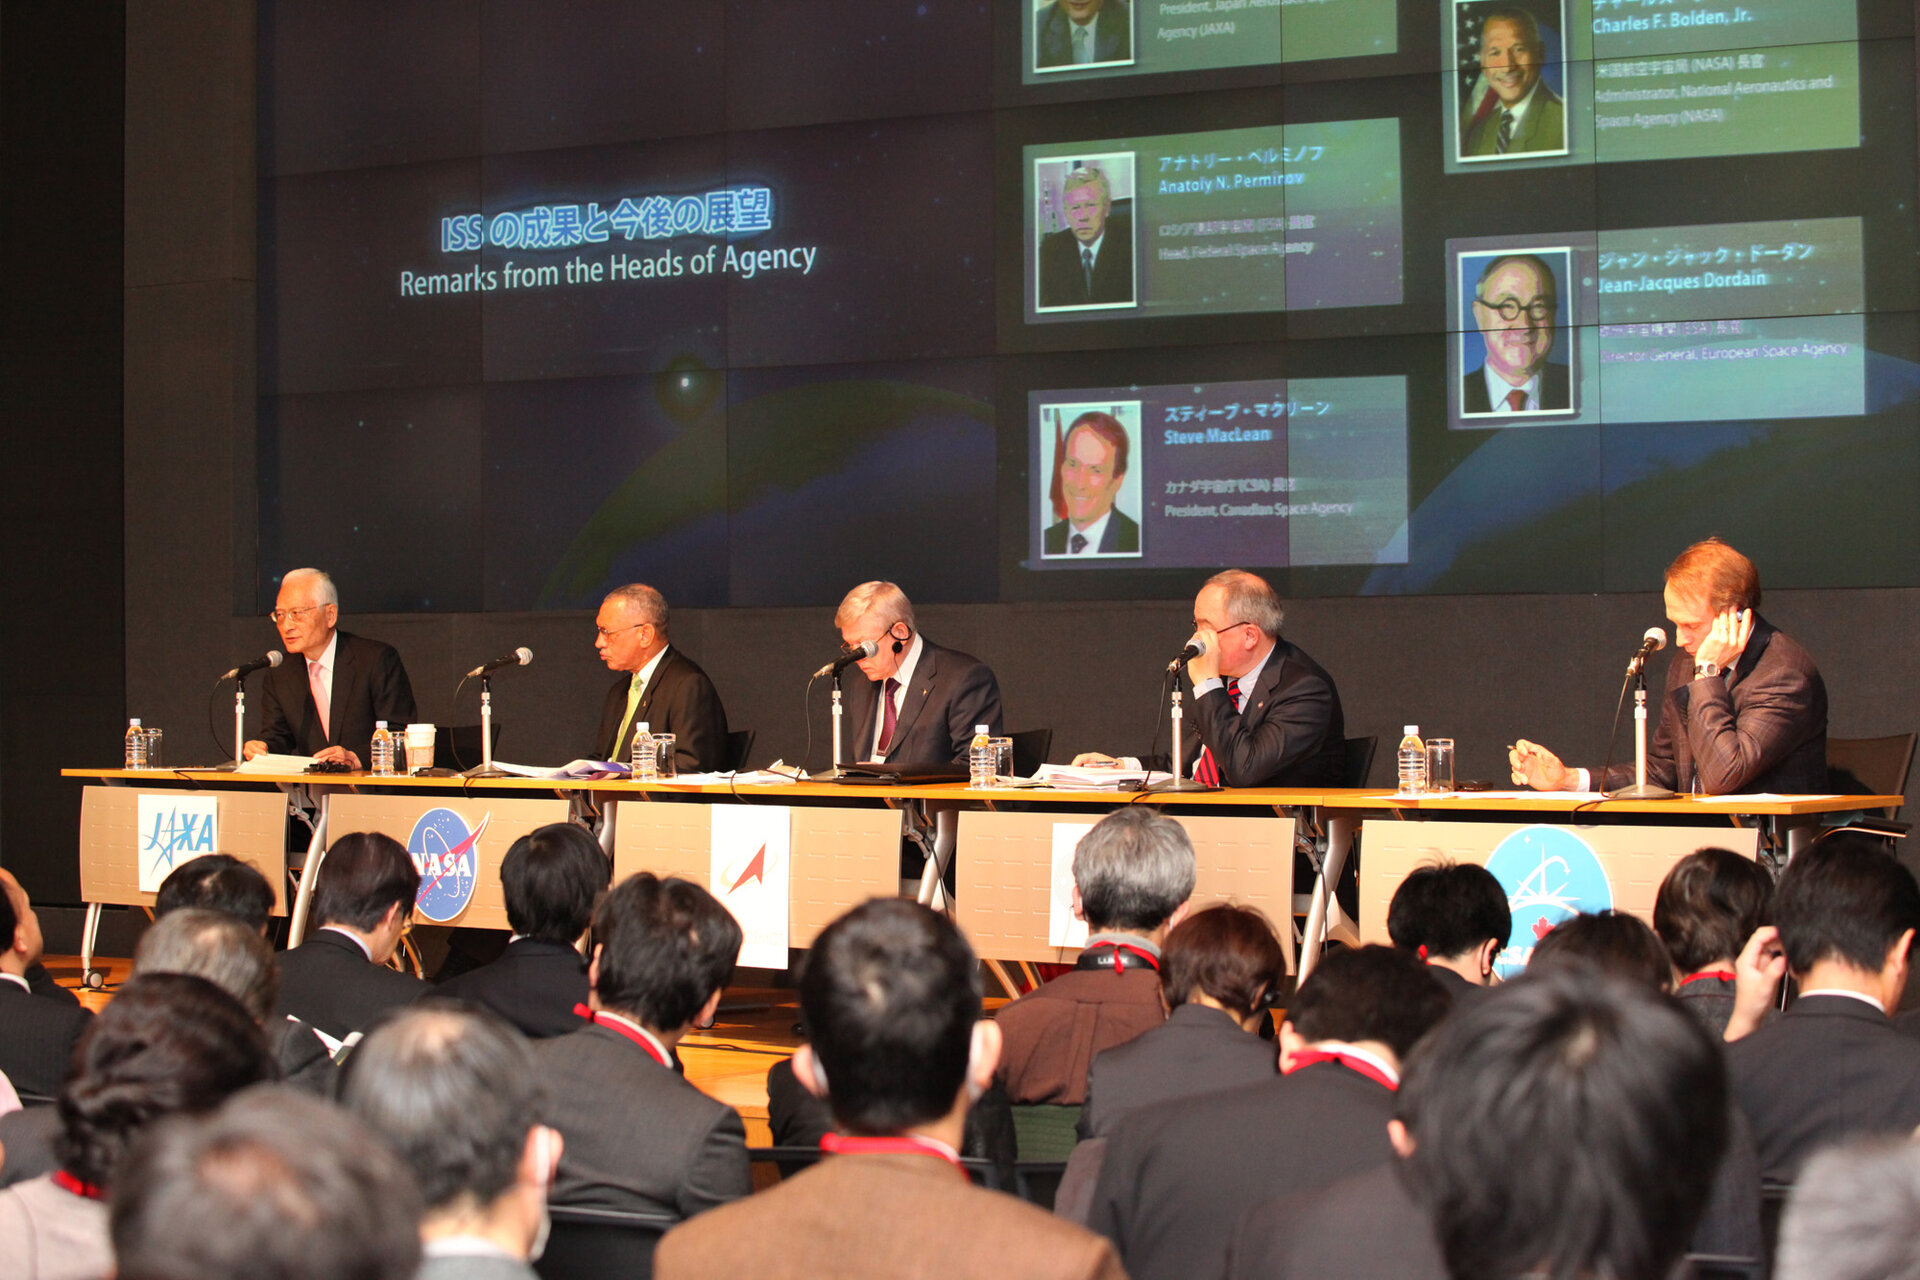 Setkání nejvyšších představitelů agentur zapojených do programu ISS v Japonsku